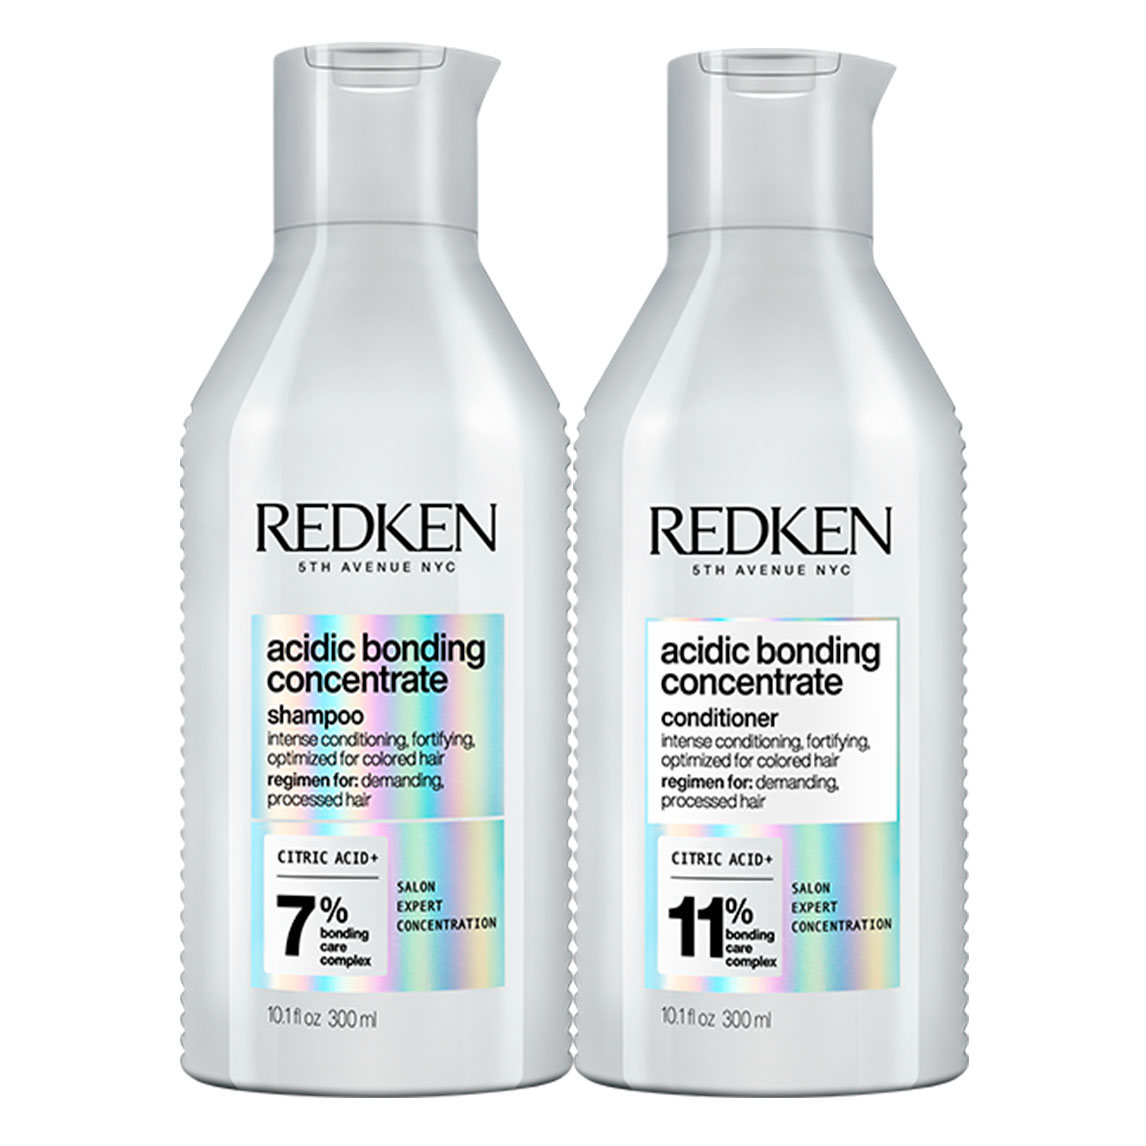 Купить Redken Набор: Шампунь для восстановления силы и прочности волос, 300 мл + Кондиционер для восстановления силы и прочности волос, 300 мл (Redken, Уход за волосами), США